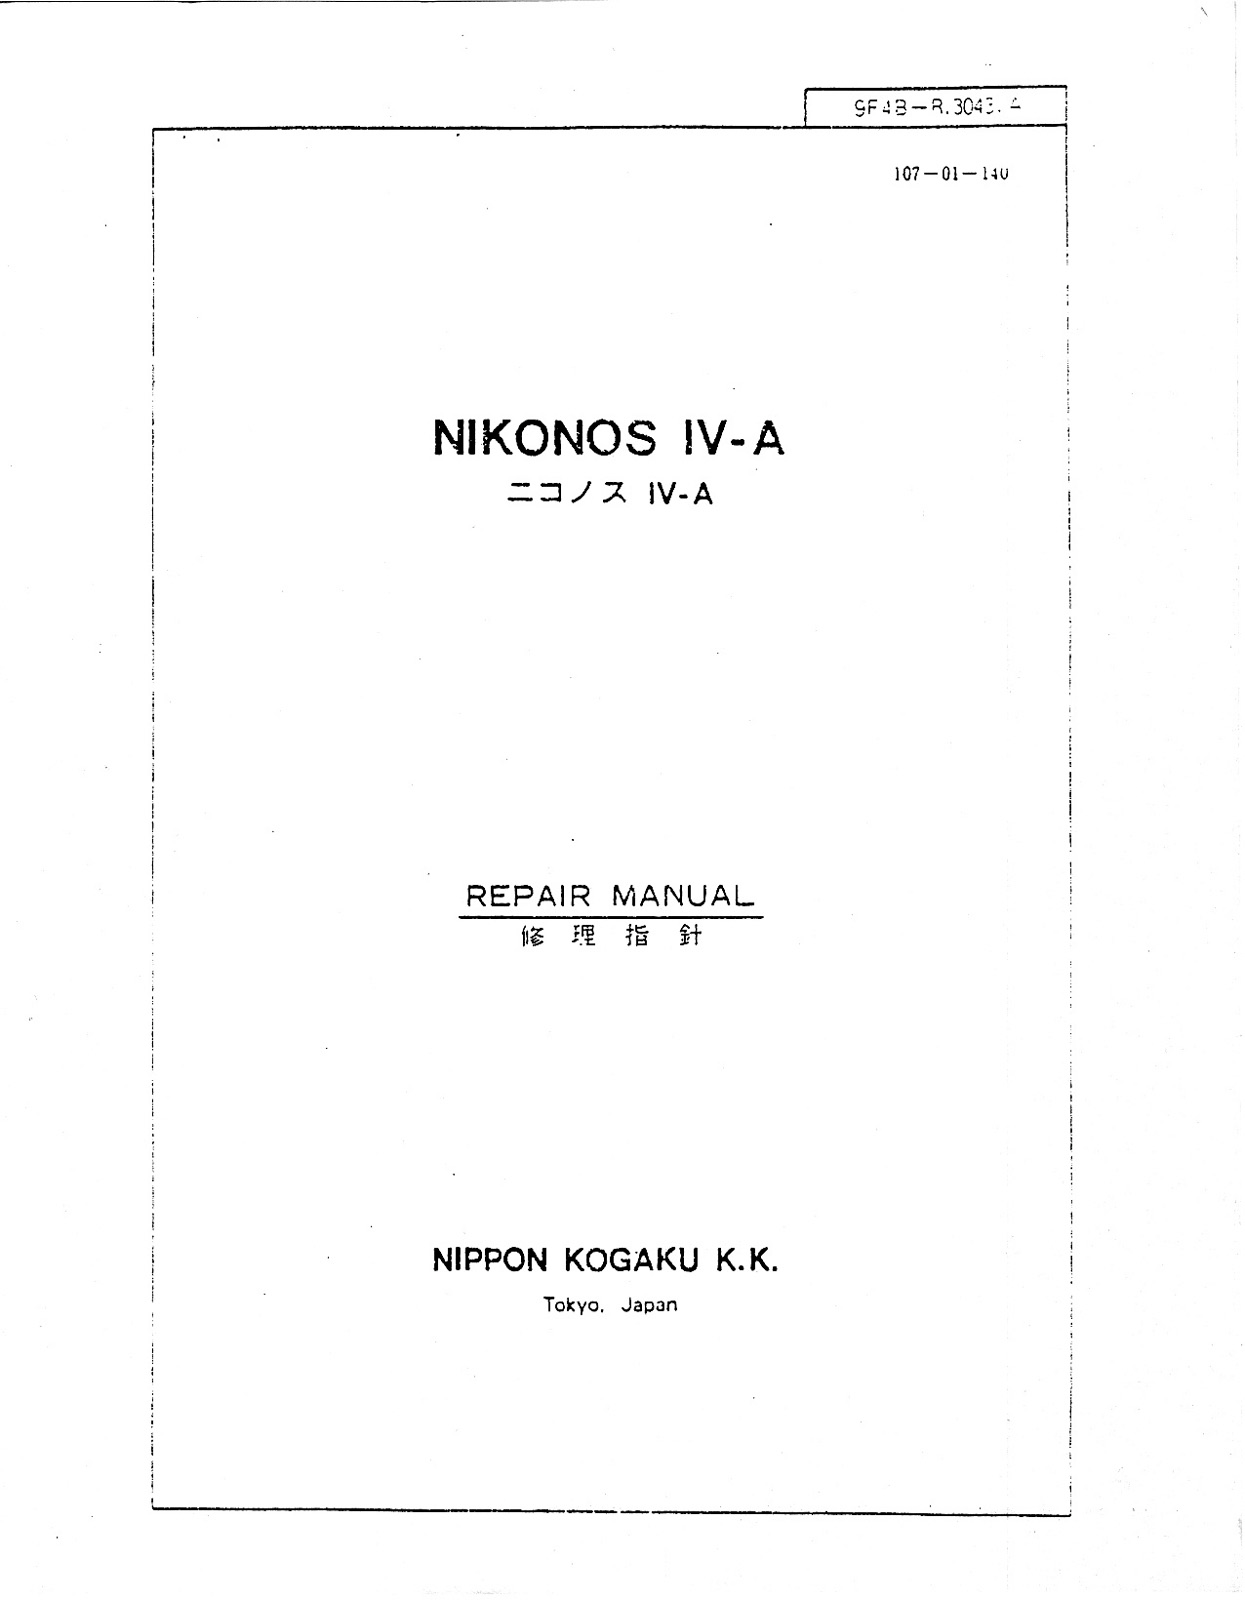 Nikon Nikonos IV Repair Manual